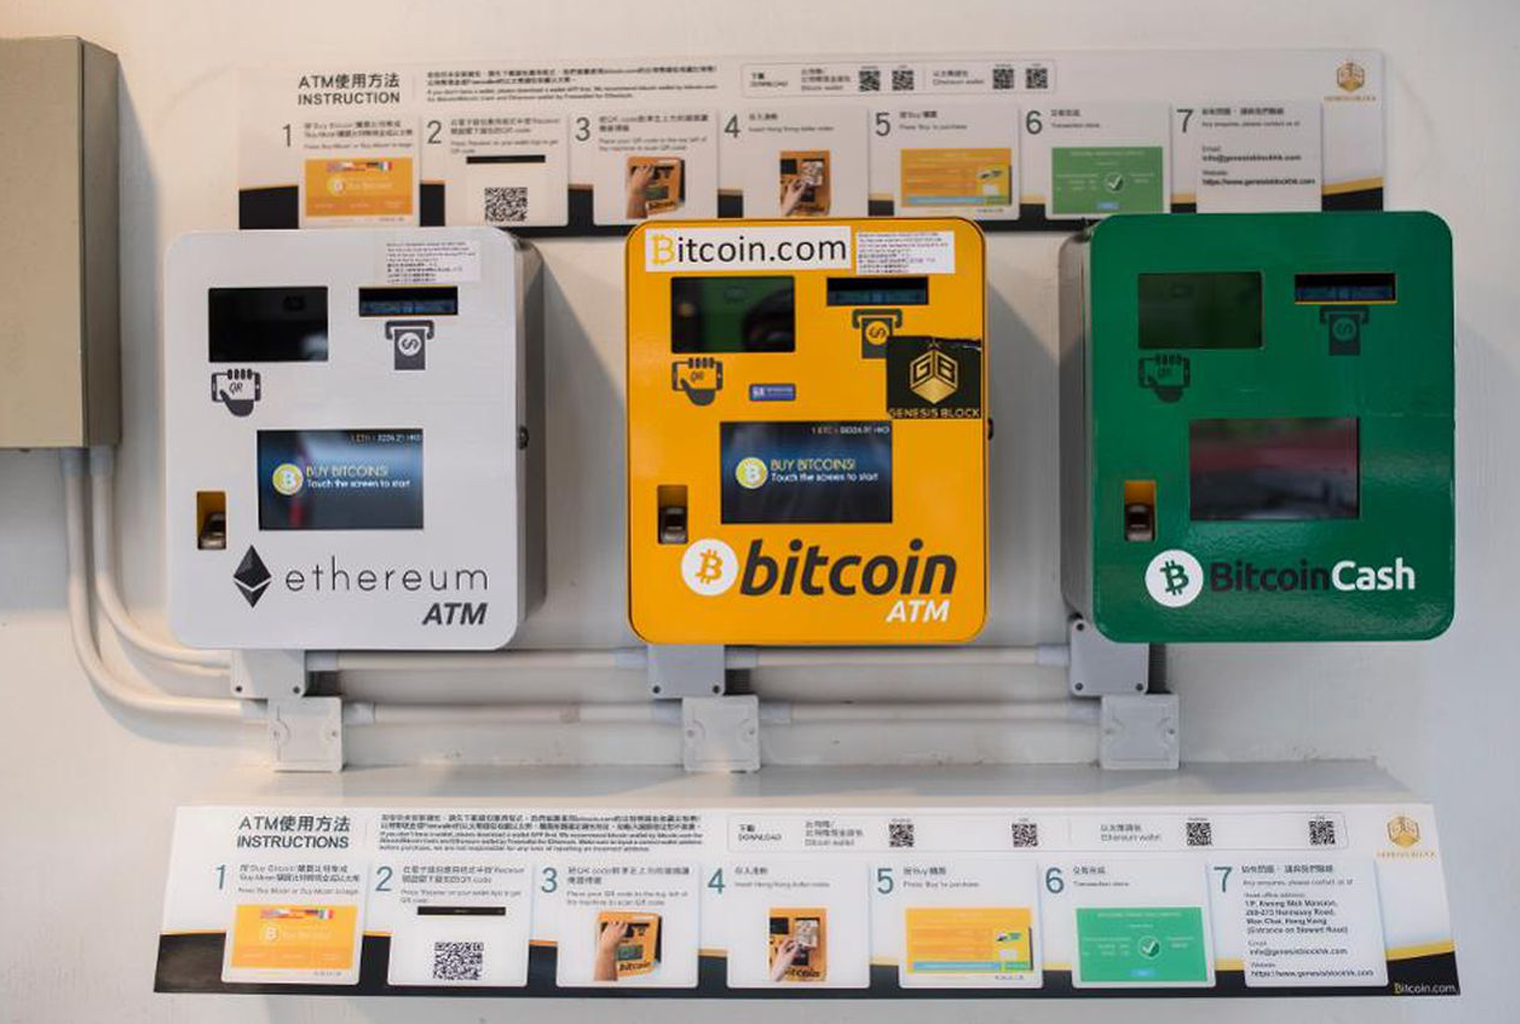 berapa banyak yang bisa saya harapkan dari memiliki ATM bitcoin